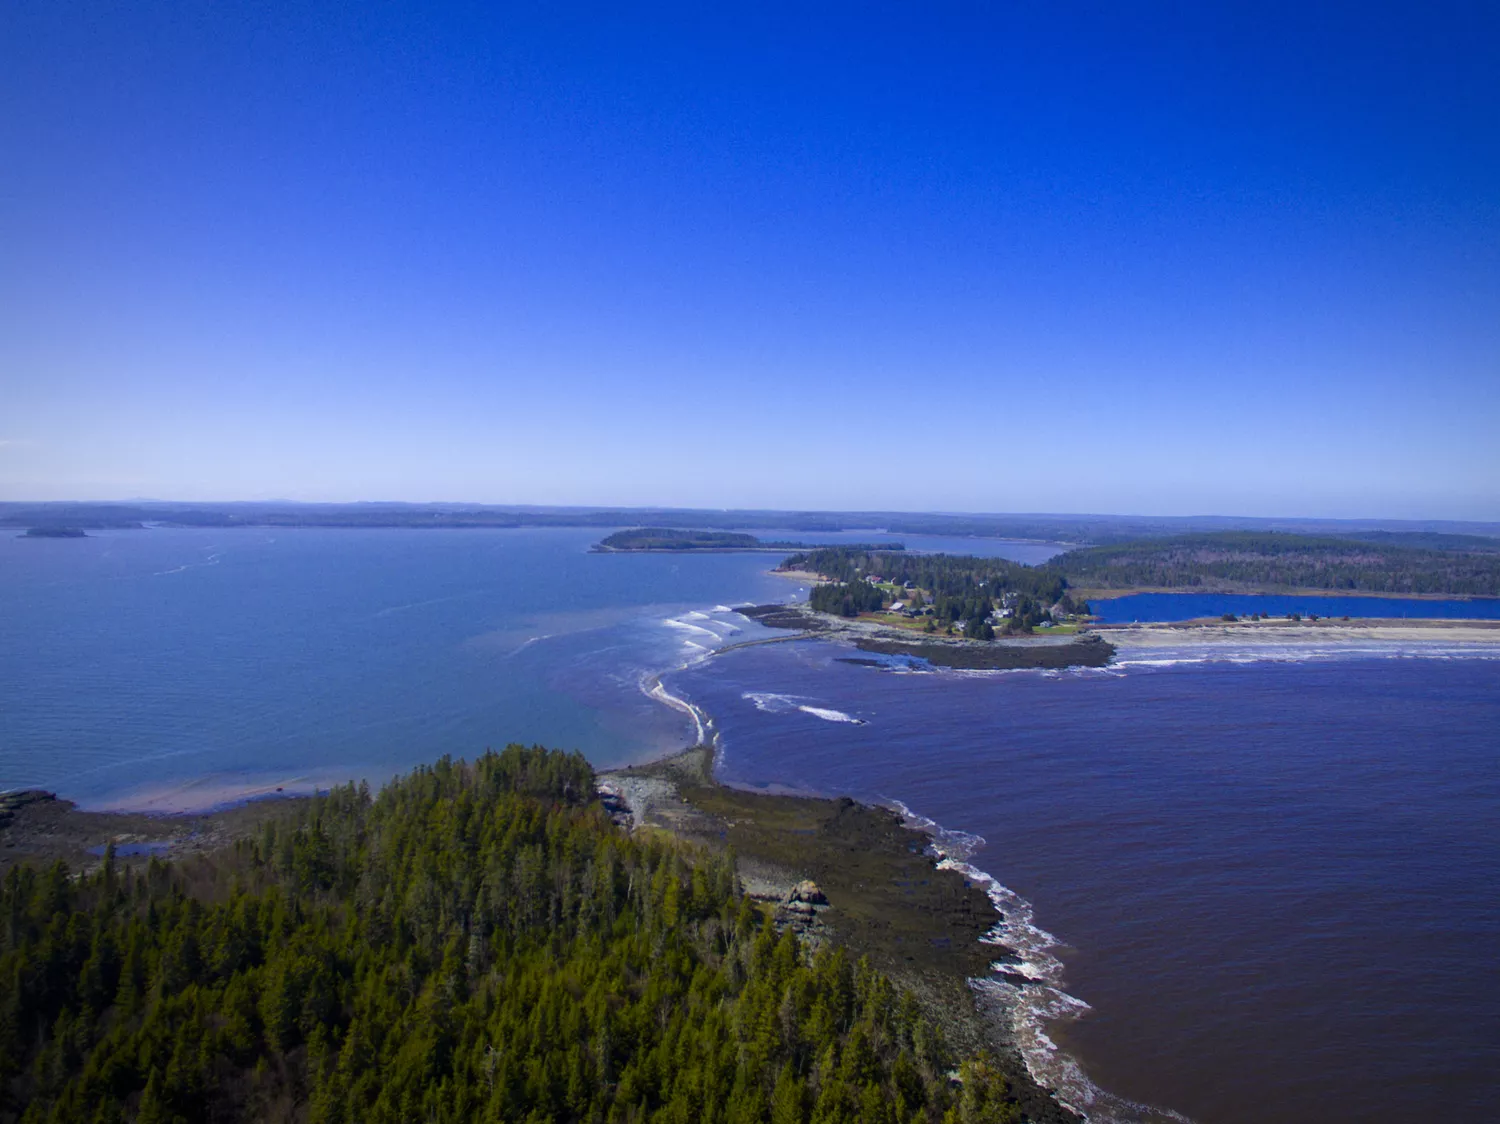 Вид с воздуха на ярко-синюю воду государственного парка и пляжа Рок Блафс в штате Мэн